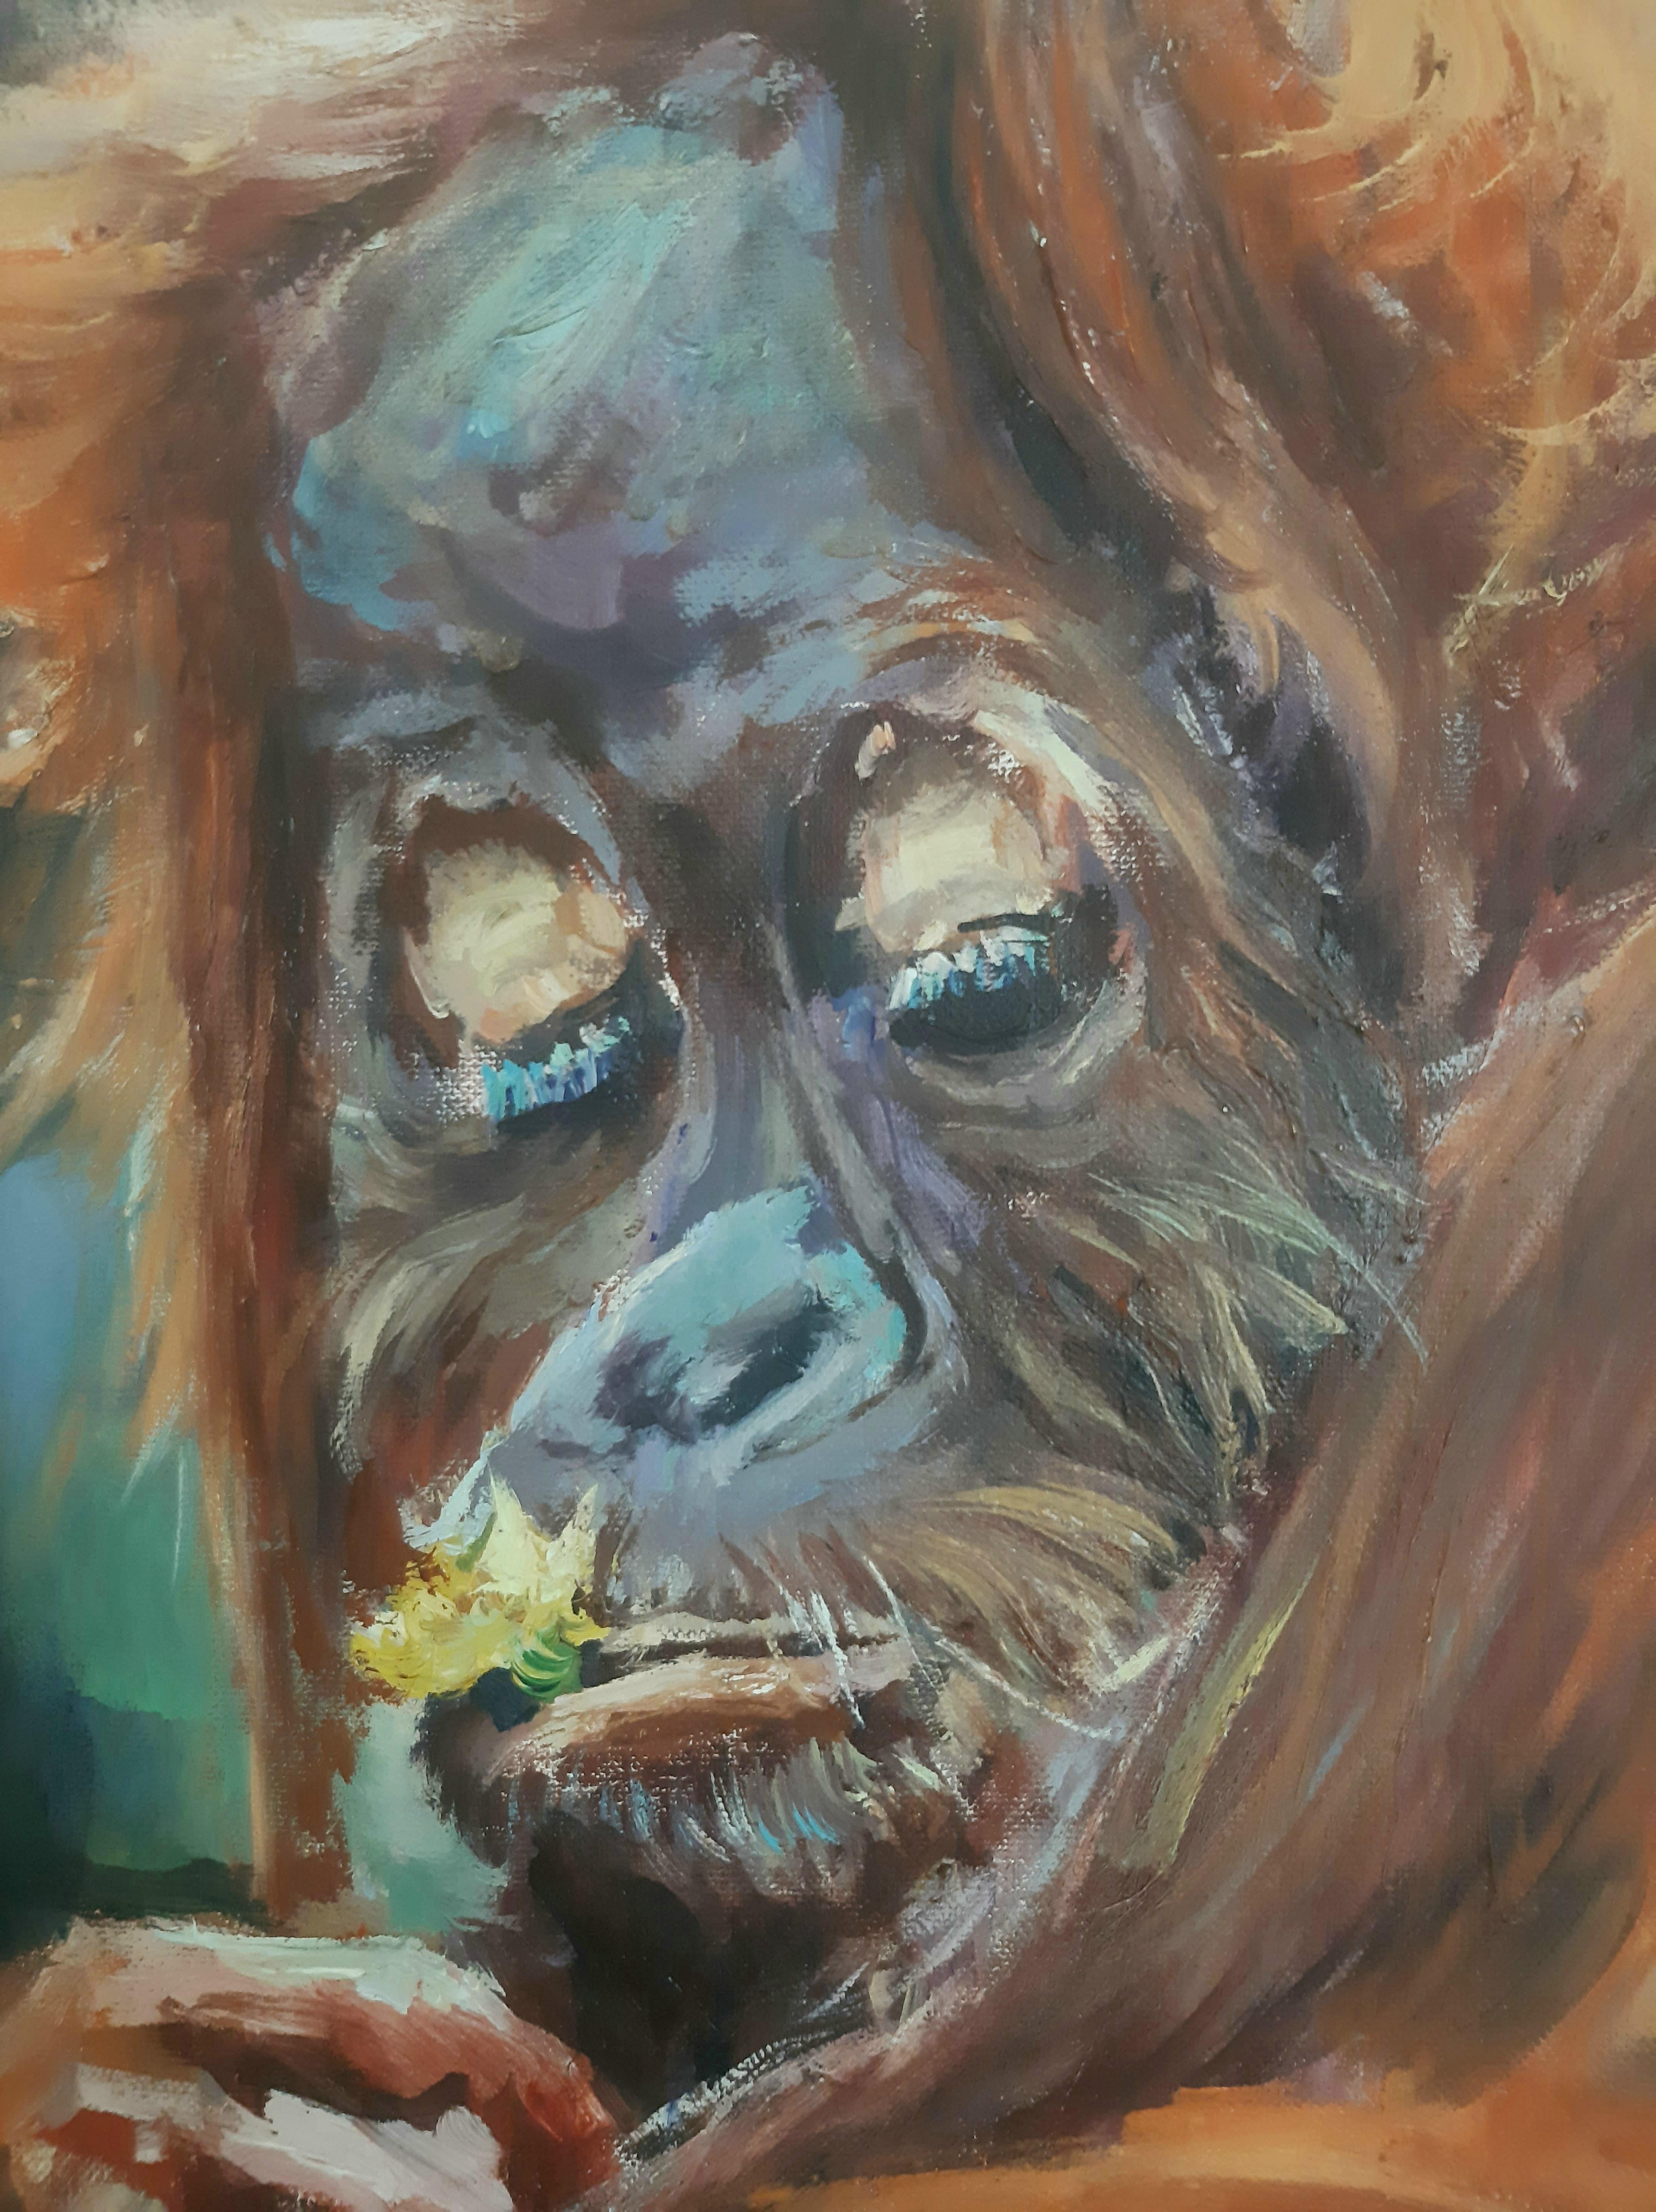 La peinture d'un orang-outan plongé dans ses pensées nous transporte dans le royaume de ses réflexions intérieures. Le visage de l'orang-outan transmet un mélange unique d'émotions - étonnement, tranquillité, et simultanément une profonde humeur